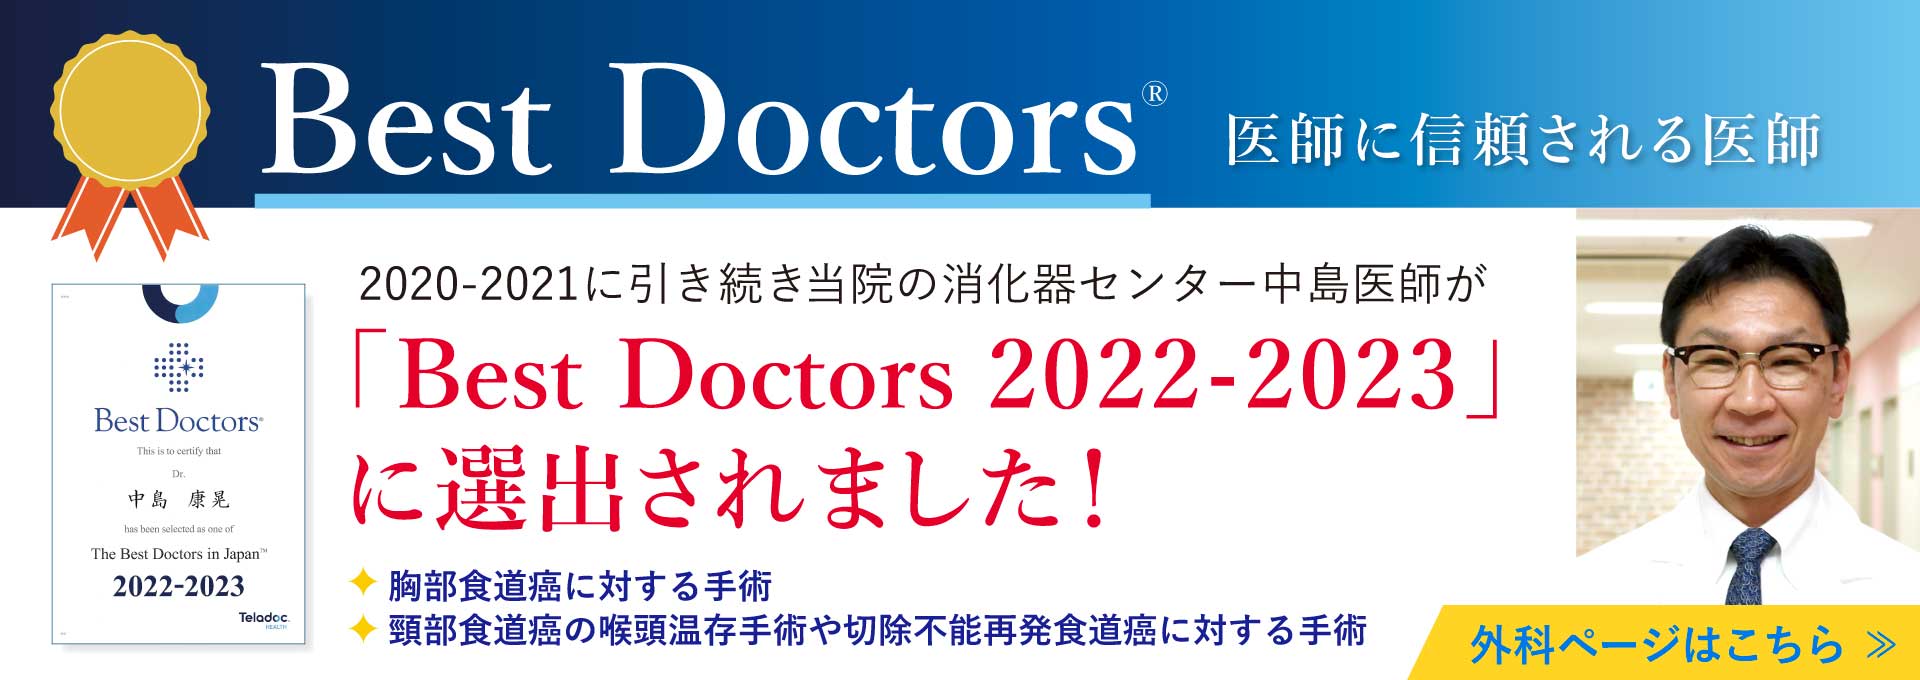 江戸川病院 Best Doctor2022-2023 中島康晃